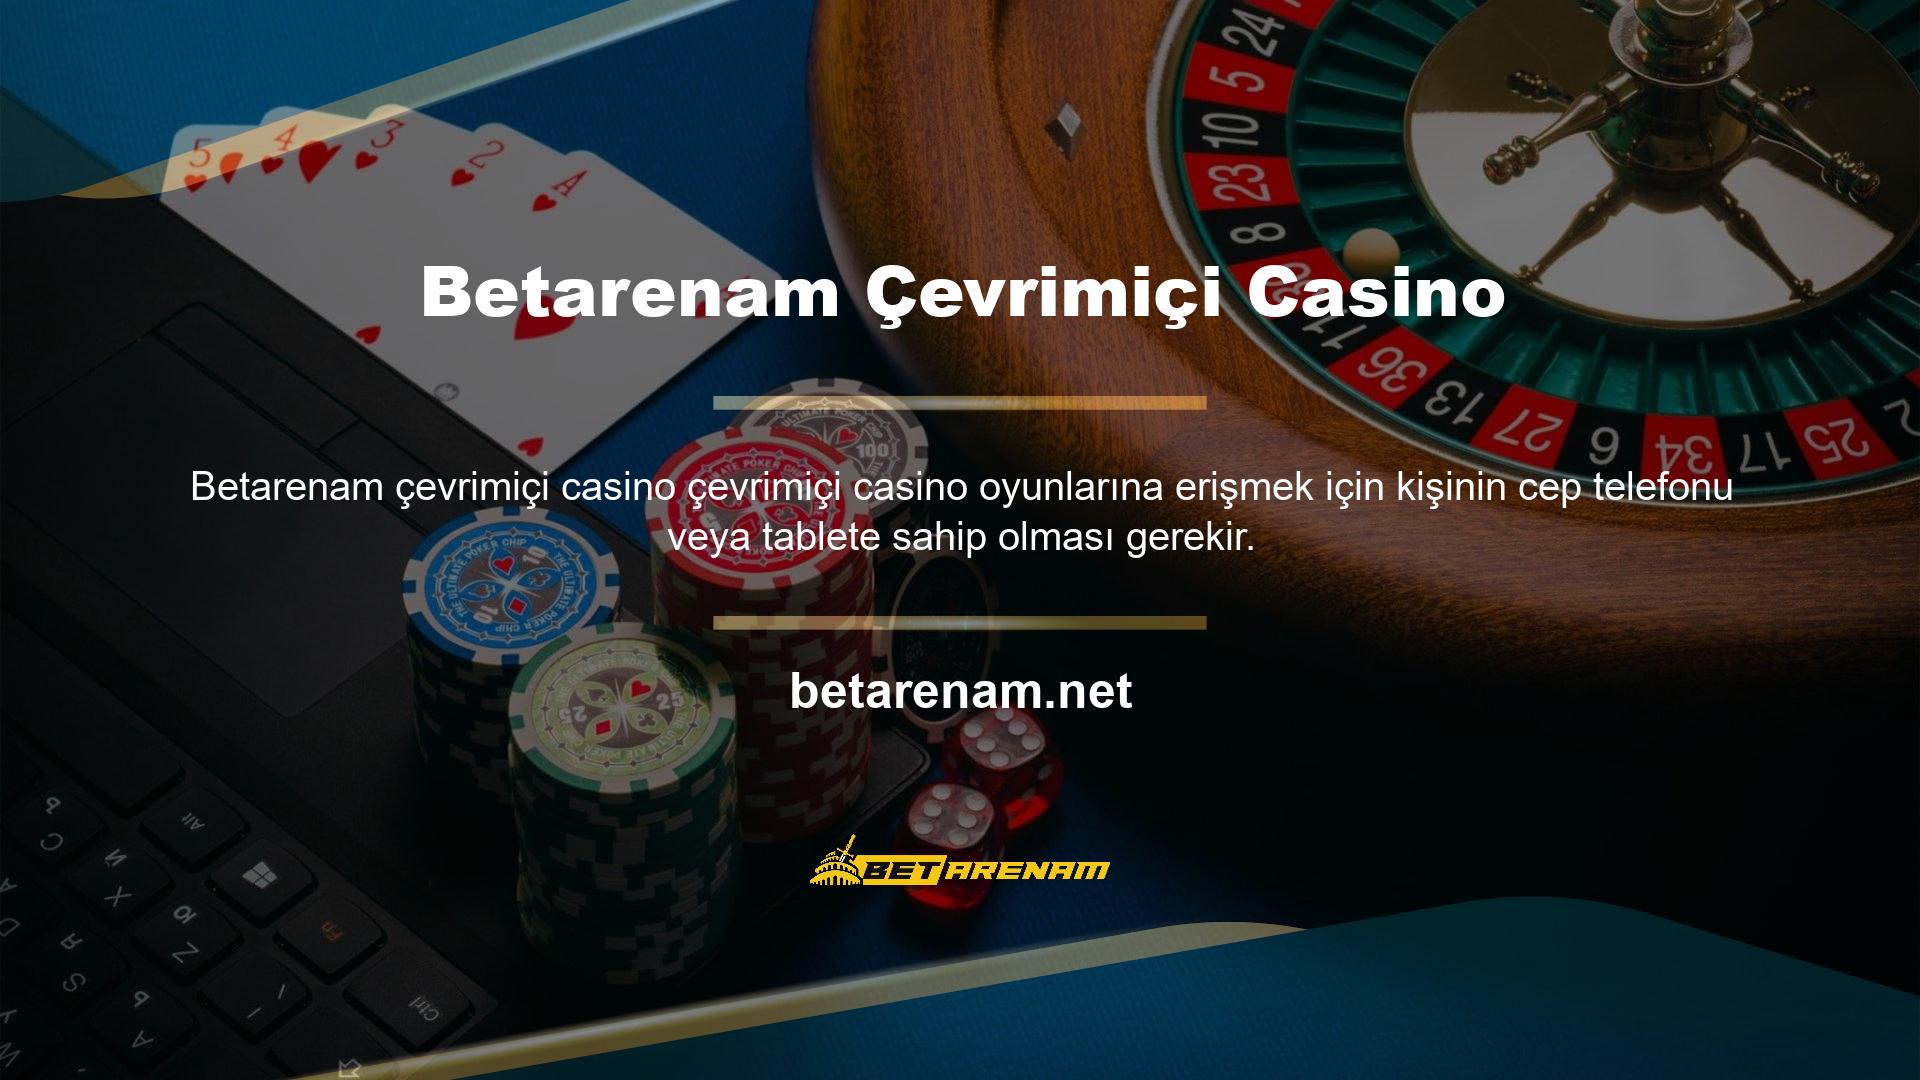 Çevrimiçi casino oyunları arasında kullanıcıların çoğunluğu, özellikle yabancı casino sitelerindeki casino oyunlarını tercih ediyor